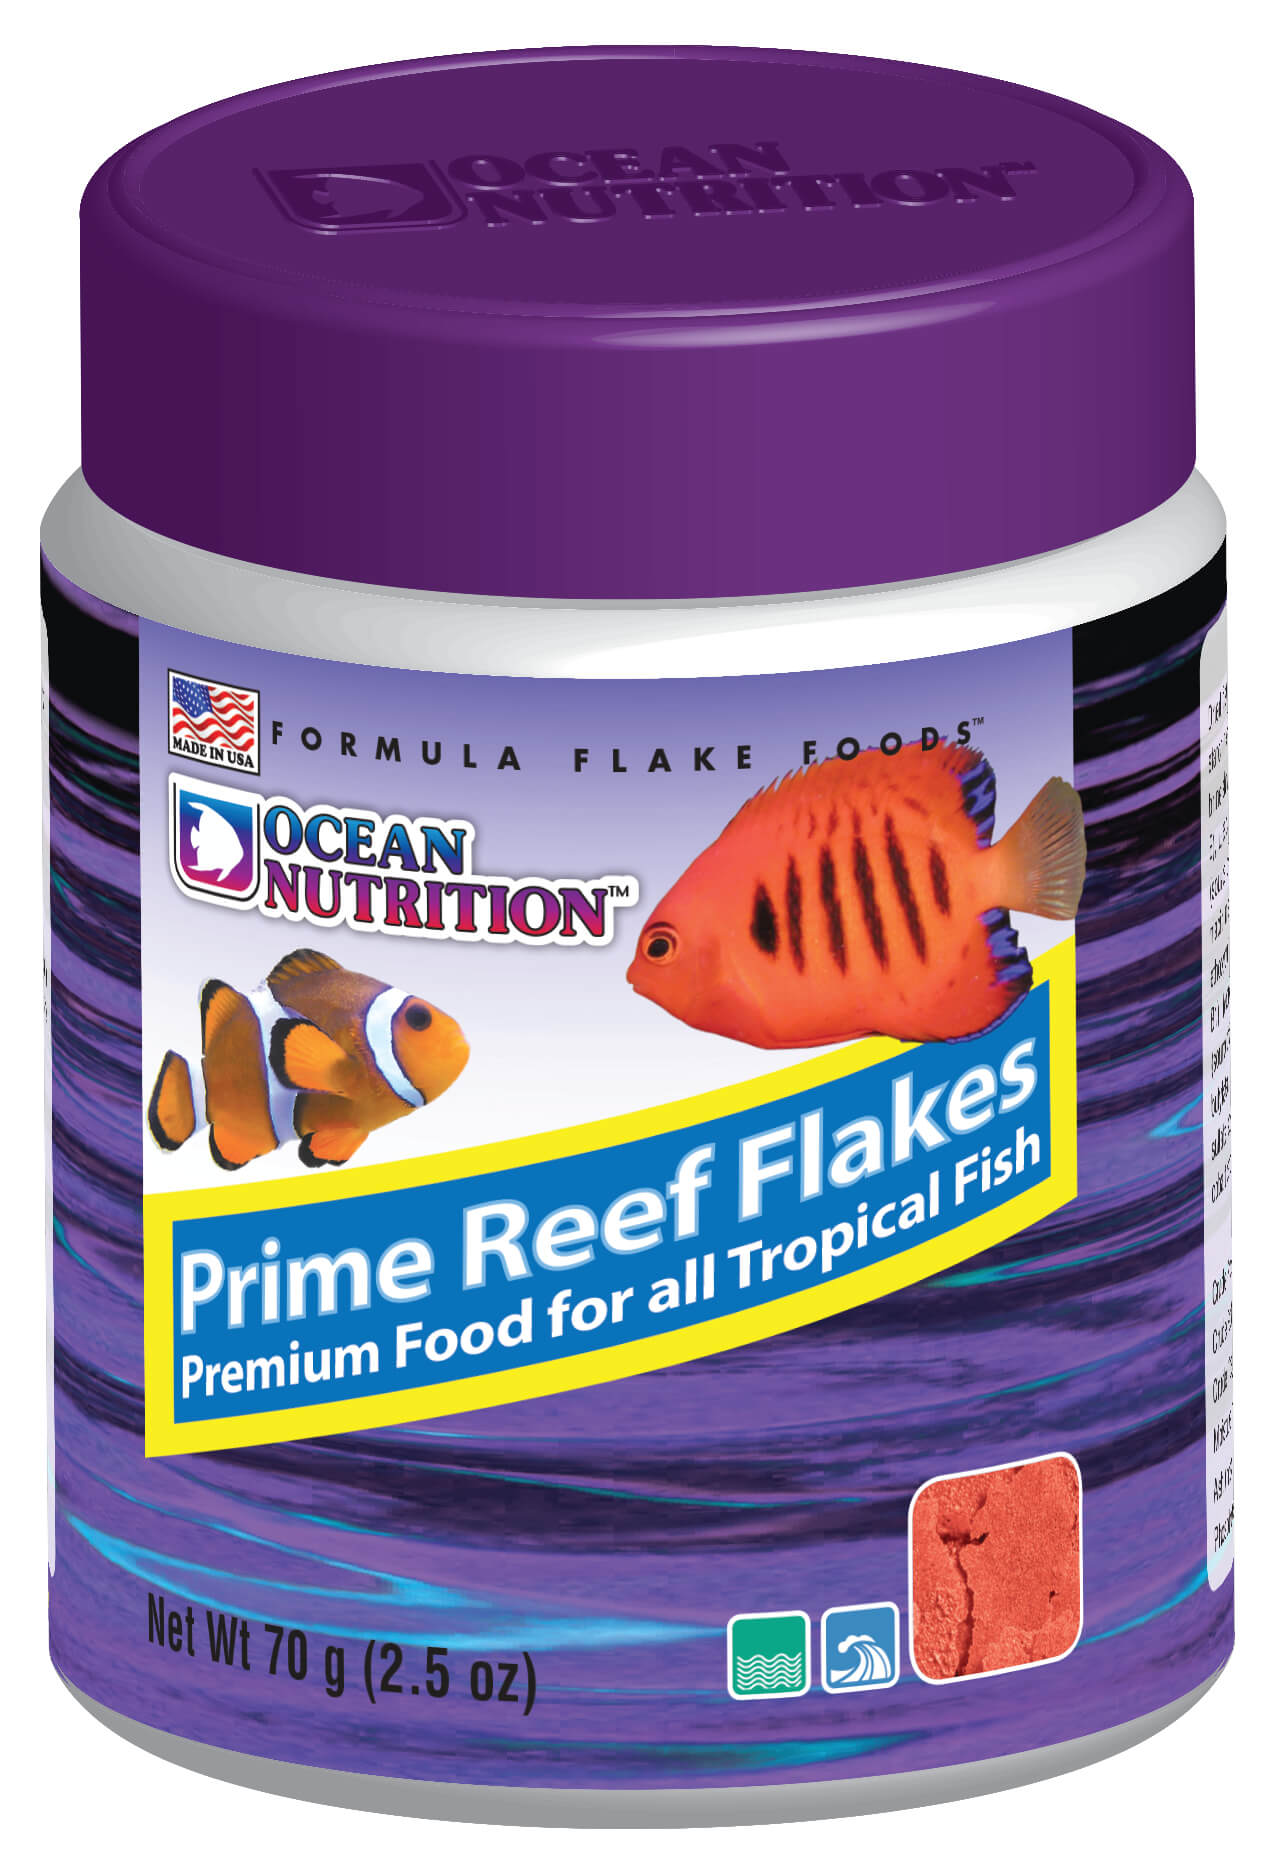 Ocean Nutrition Prime Reef Flake Food - 2.5oz